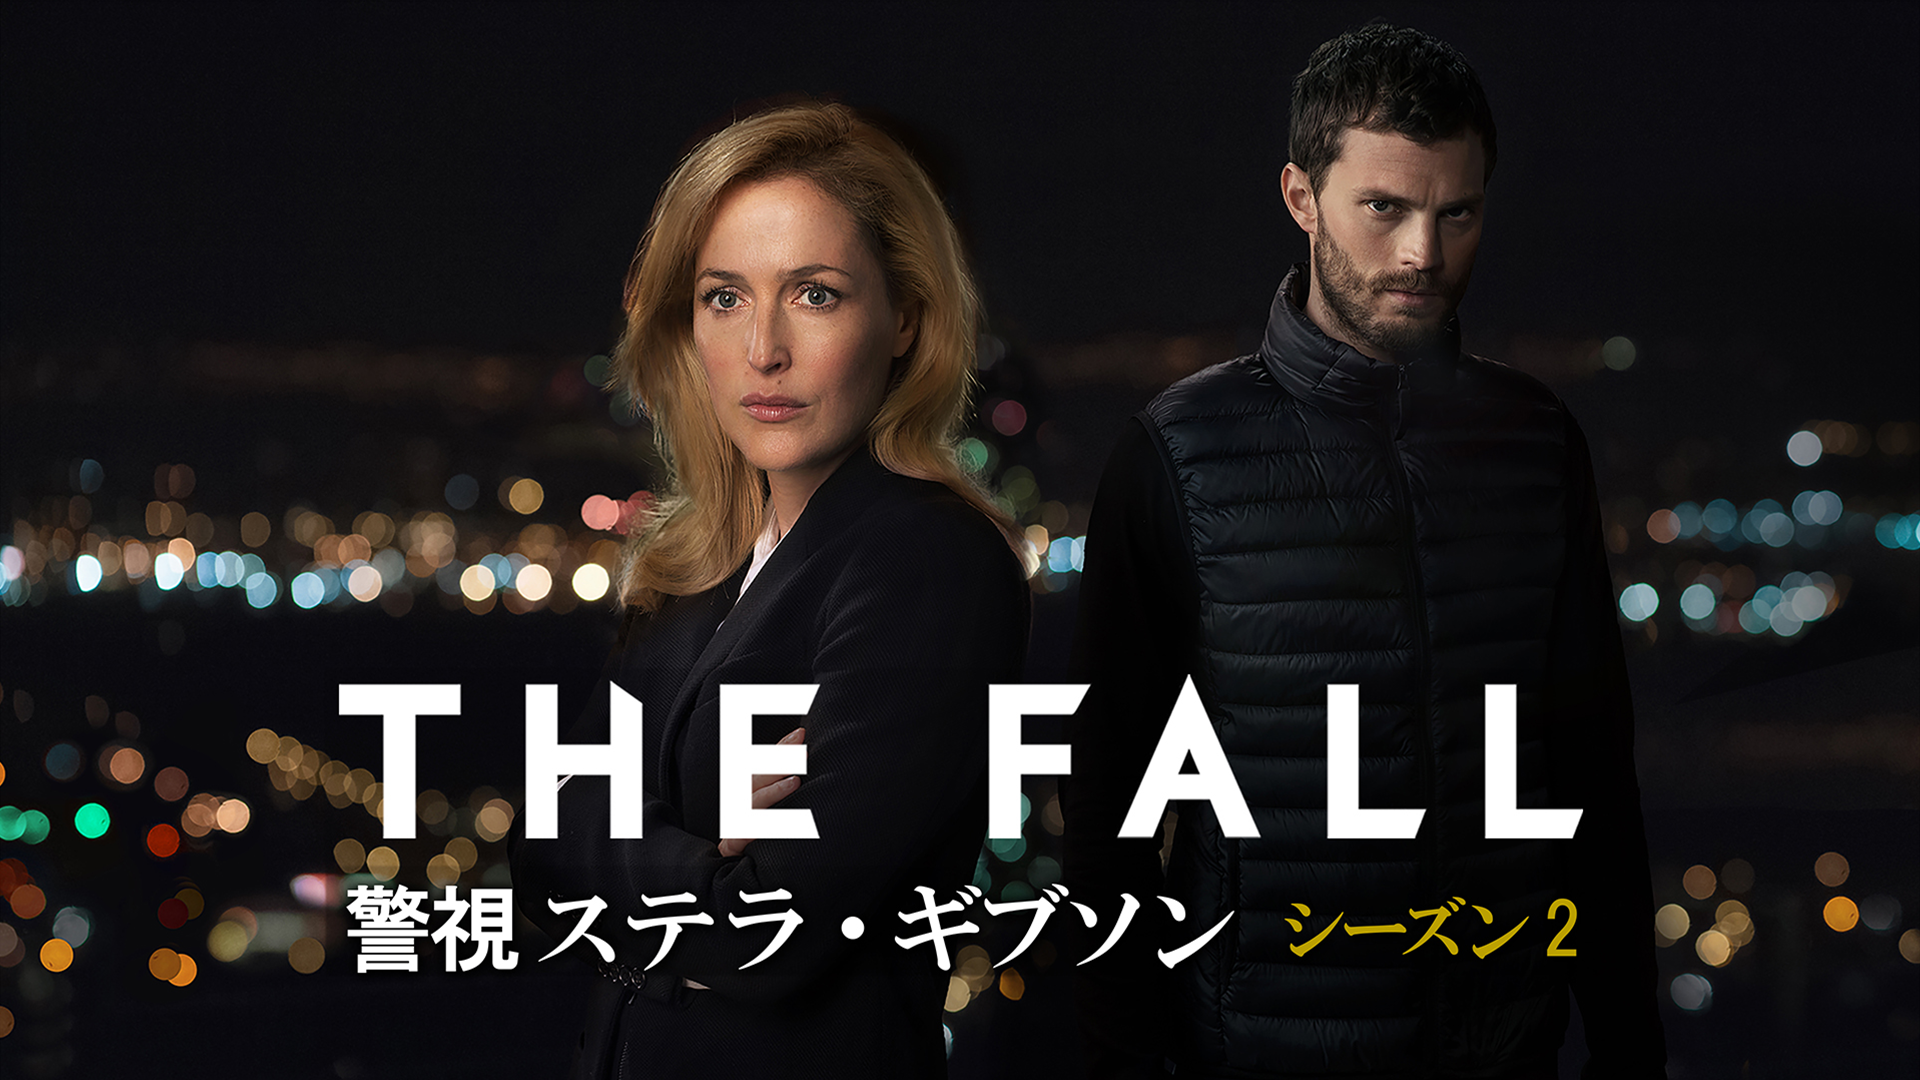 THE FALL 警視ステラ・ギブソン2(海外ドラマ / 2015) - 動画配信 | U 